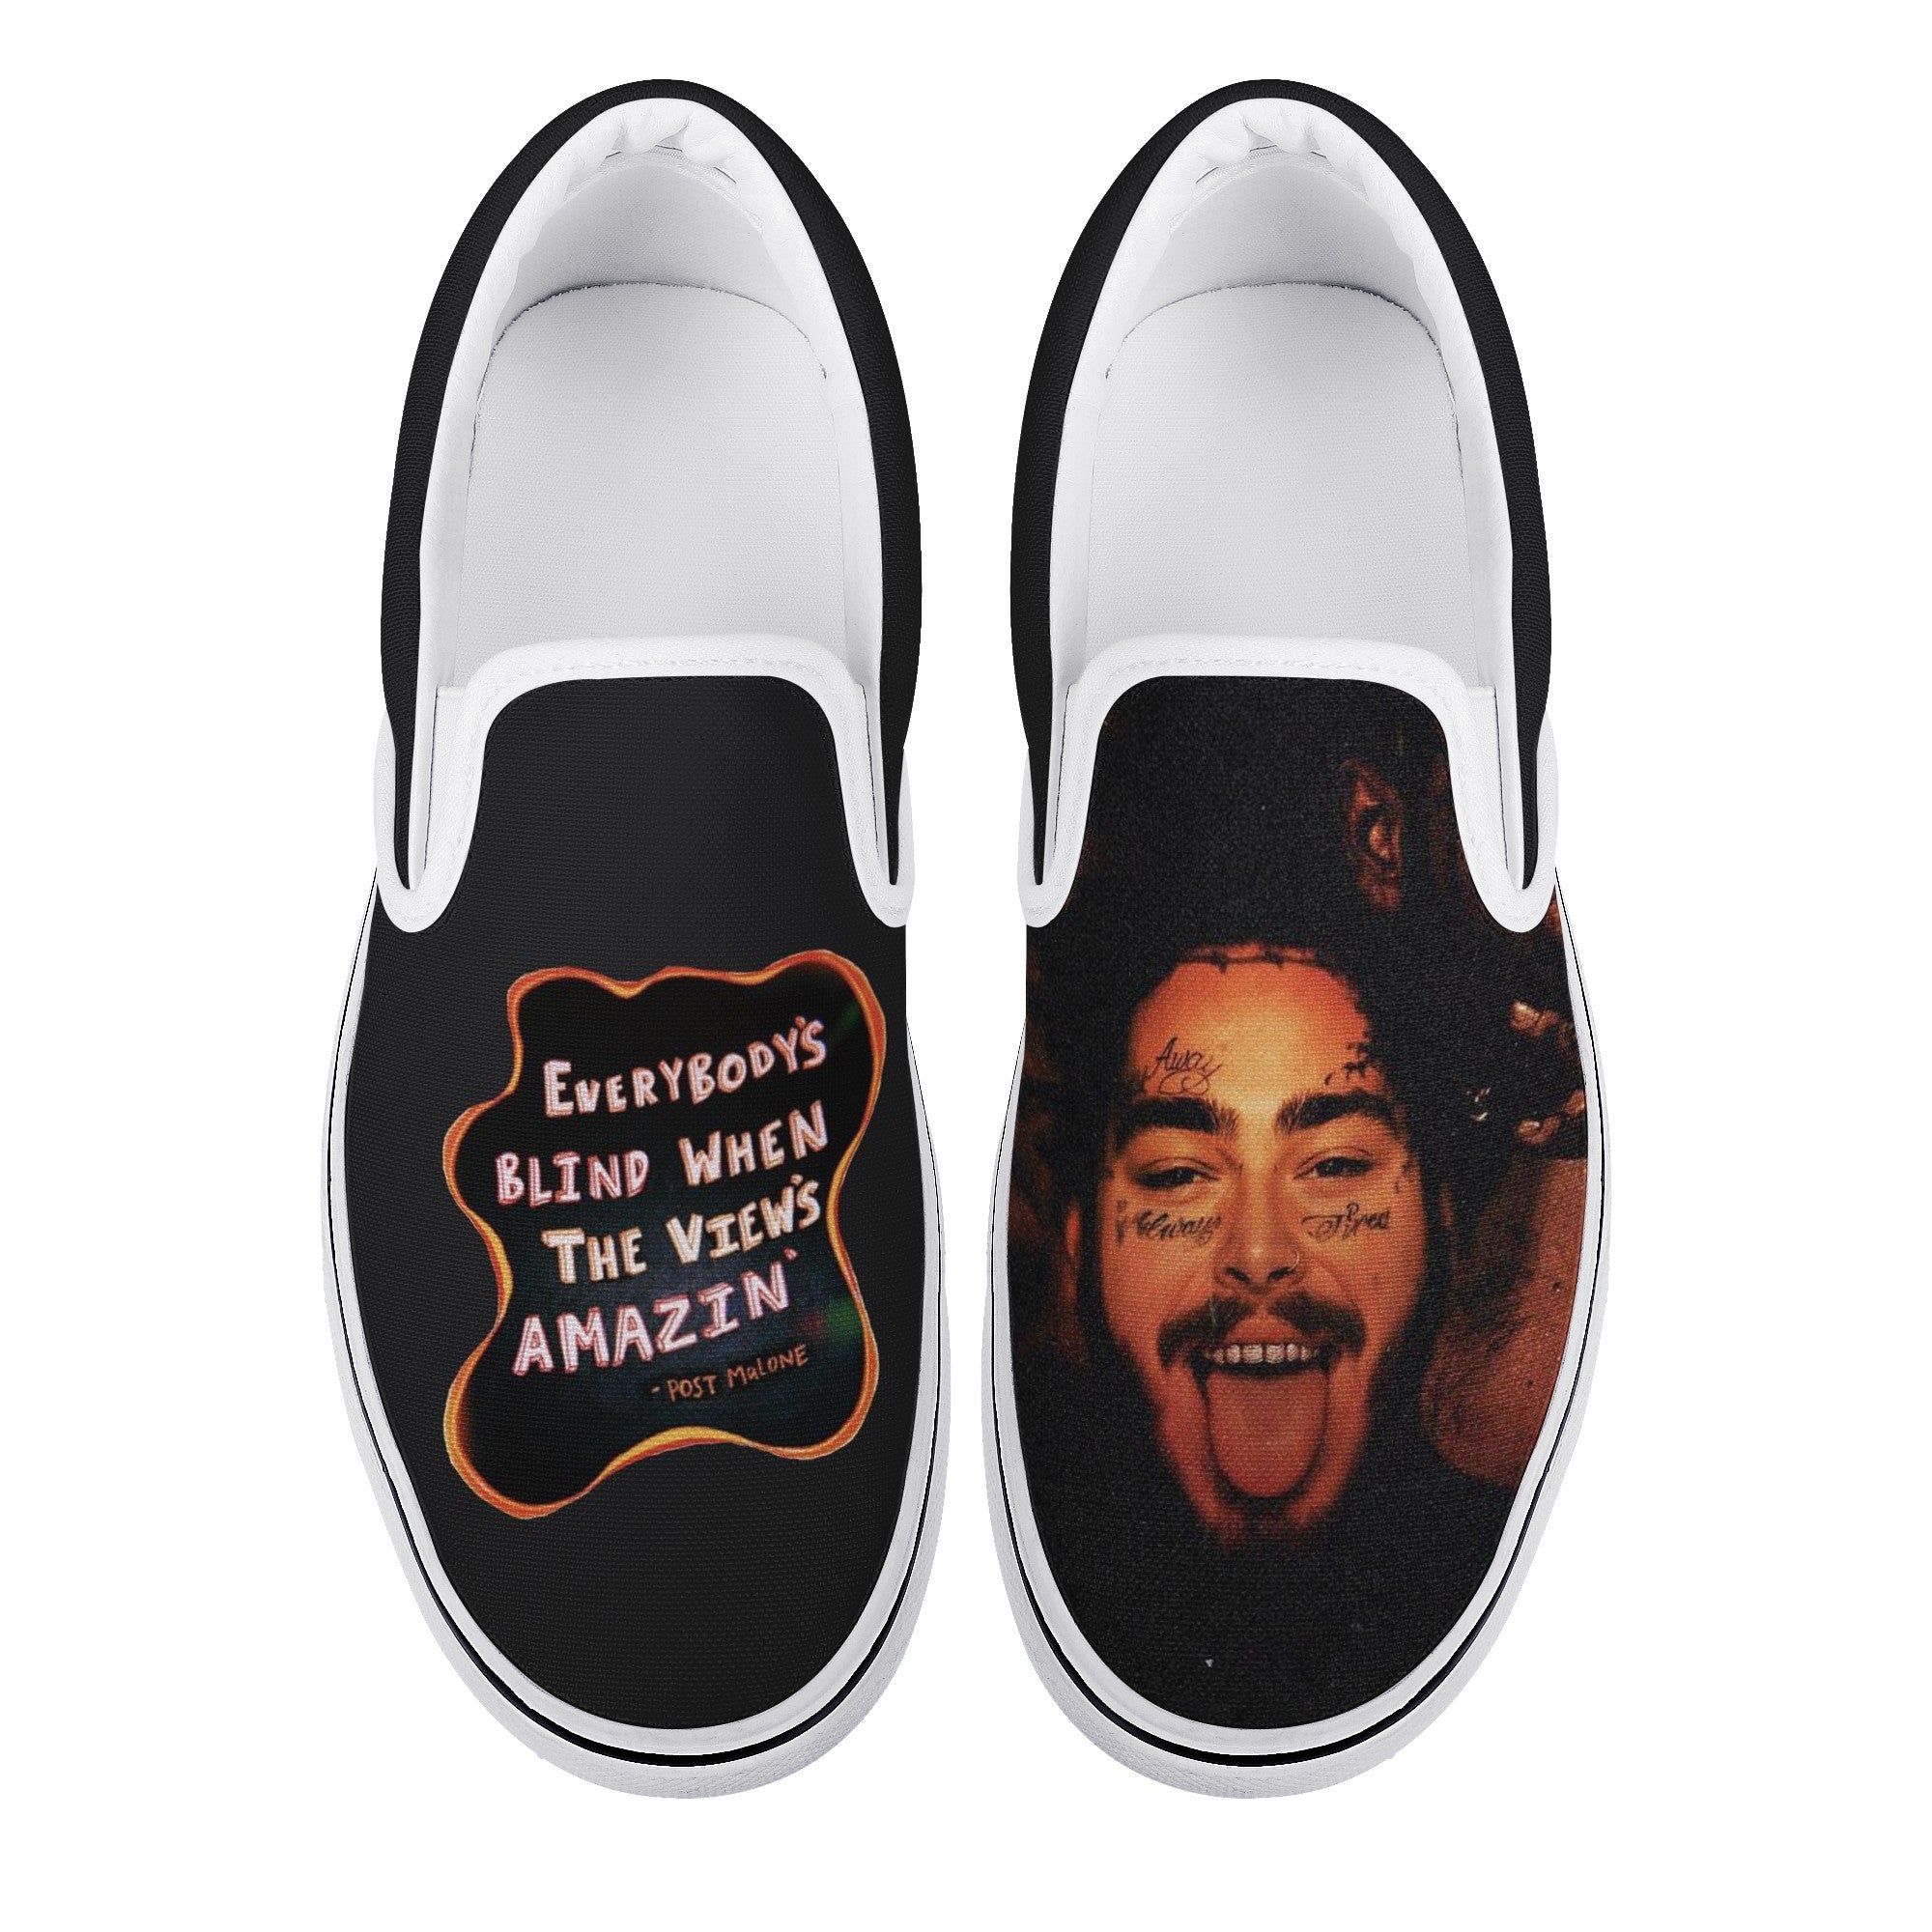 Post Malone Custom Vans Slip On Shoes